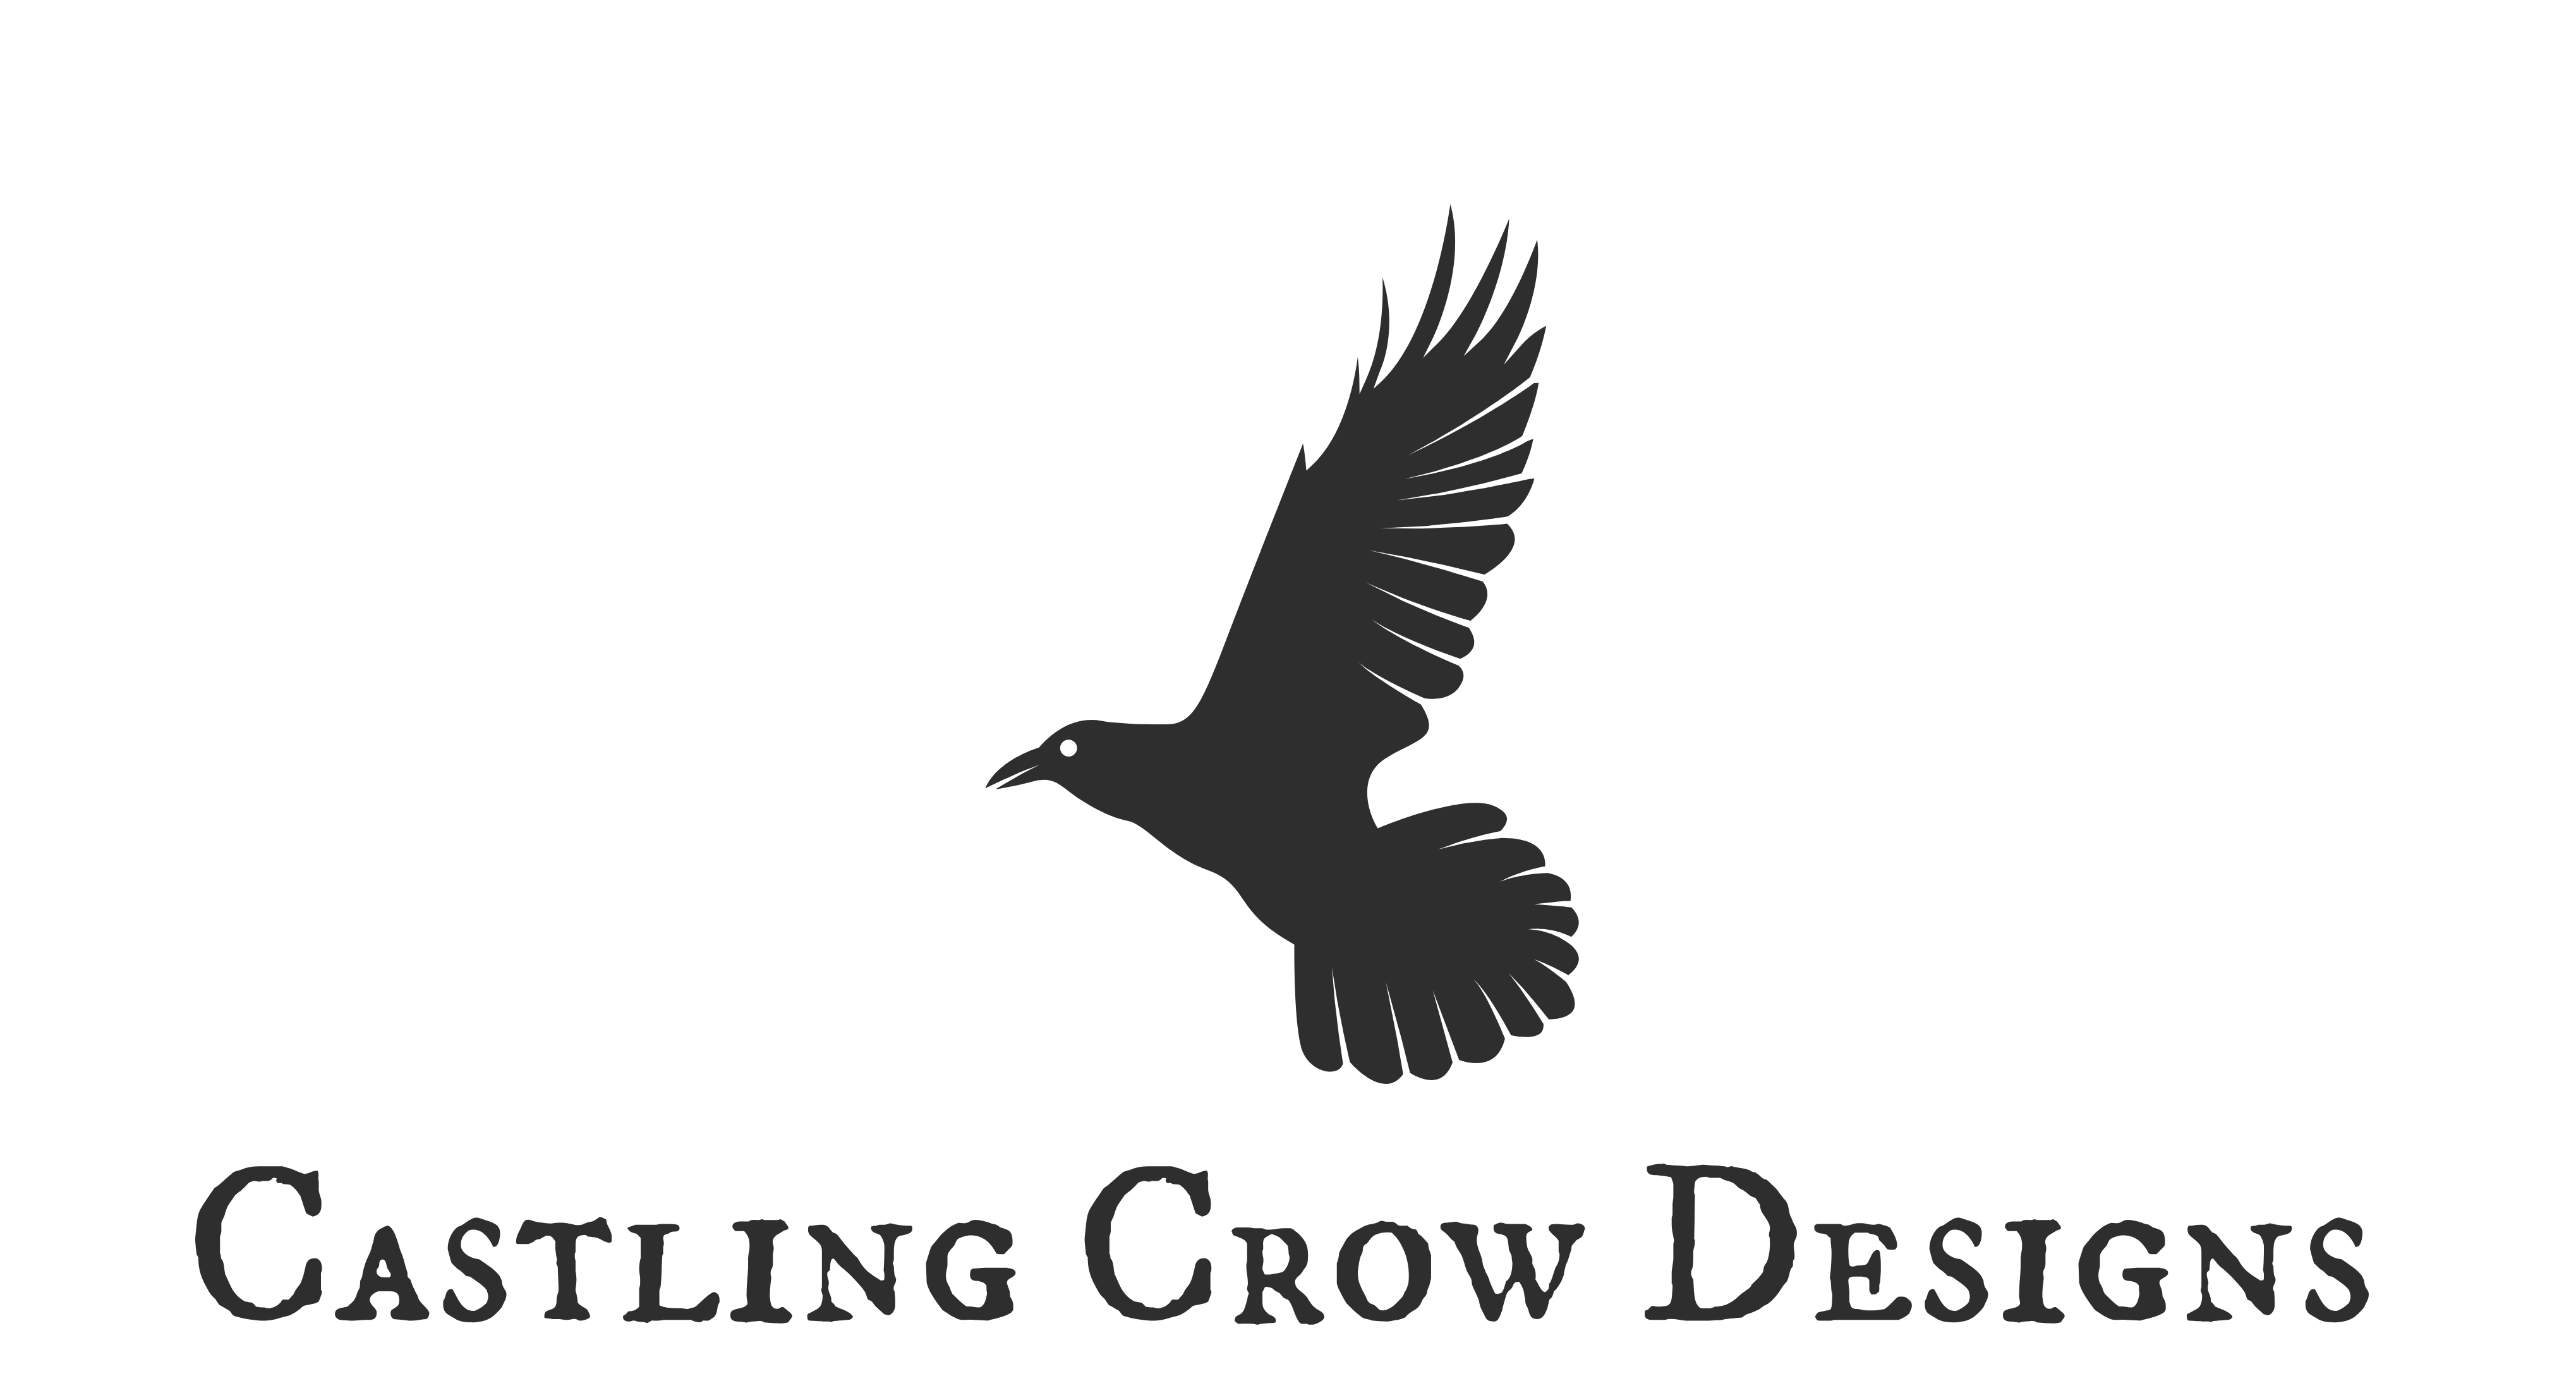 Castling Crow Designs